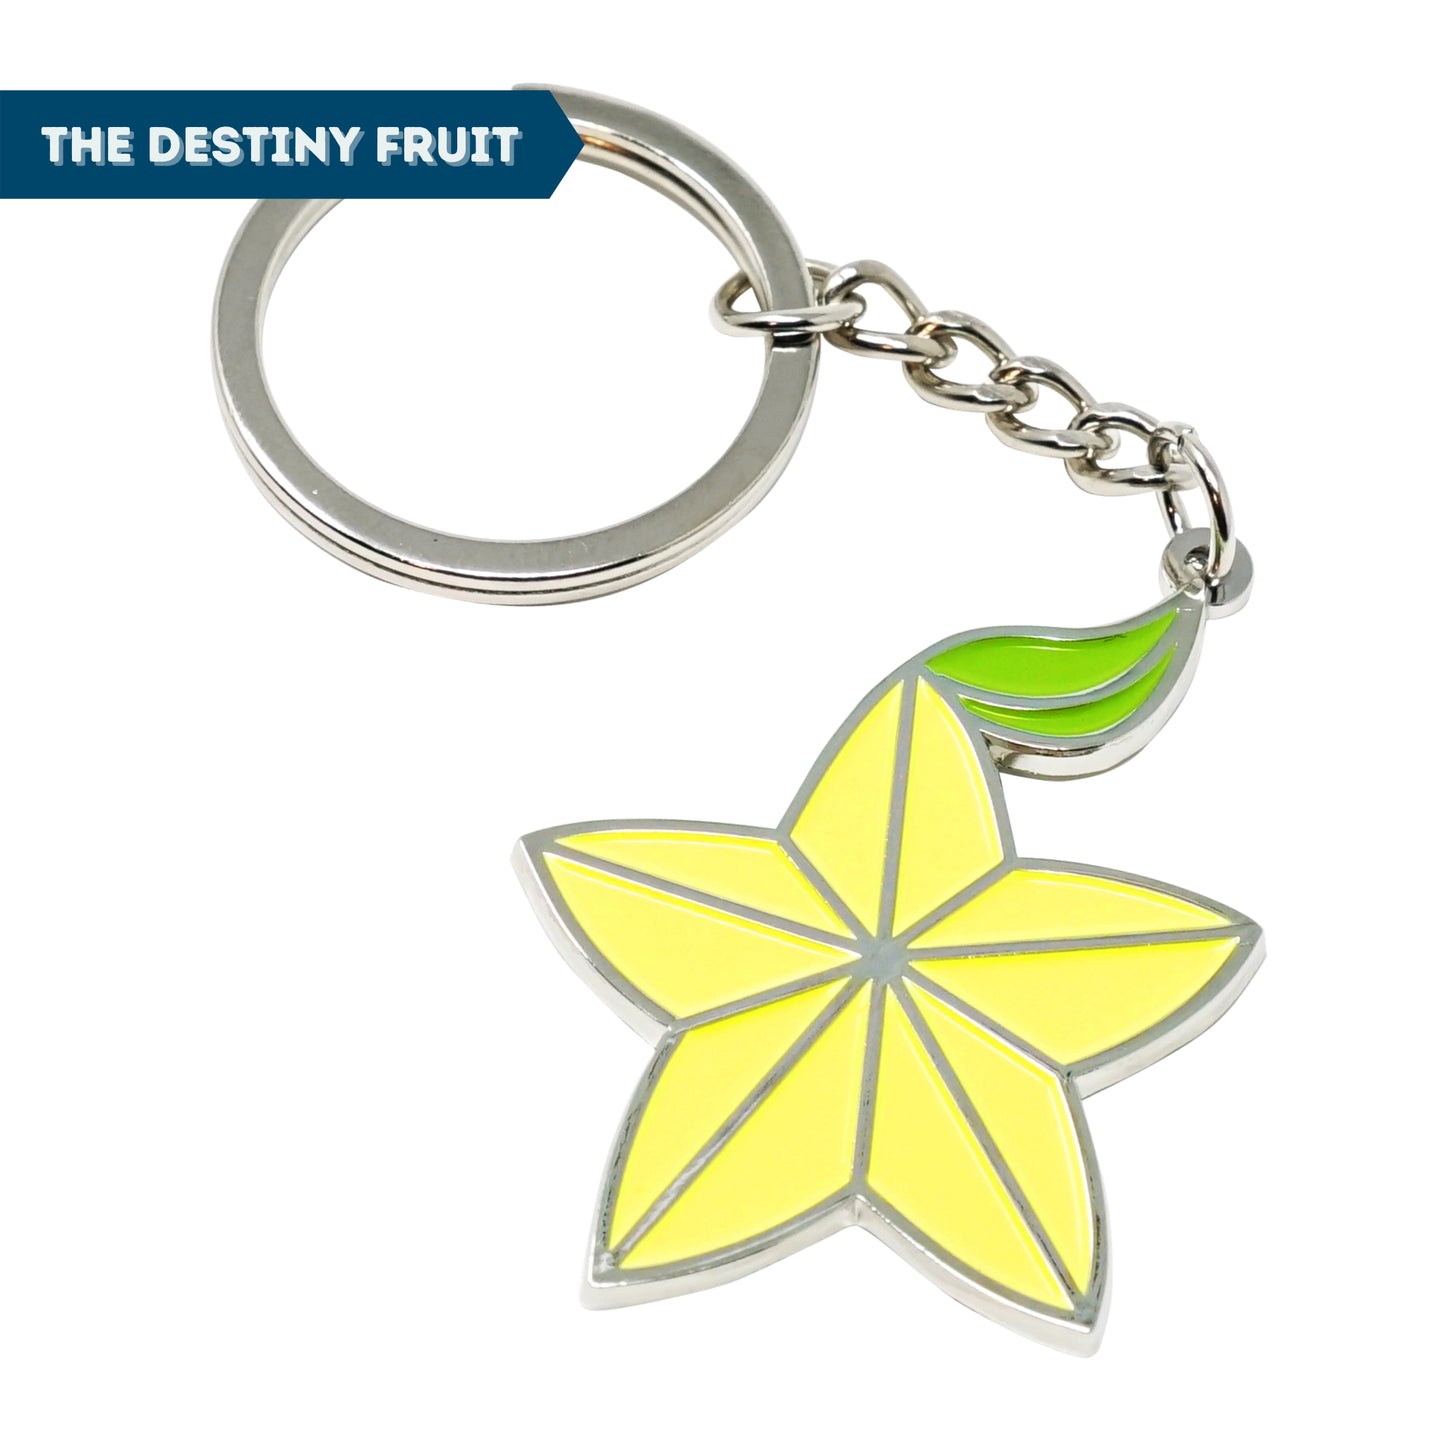 Kingdom Key + Destiny Fruit